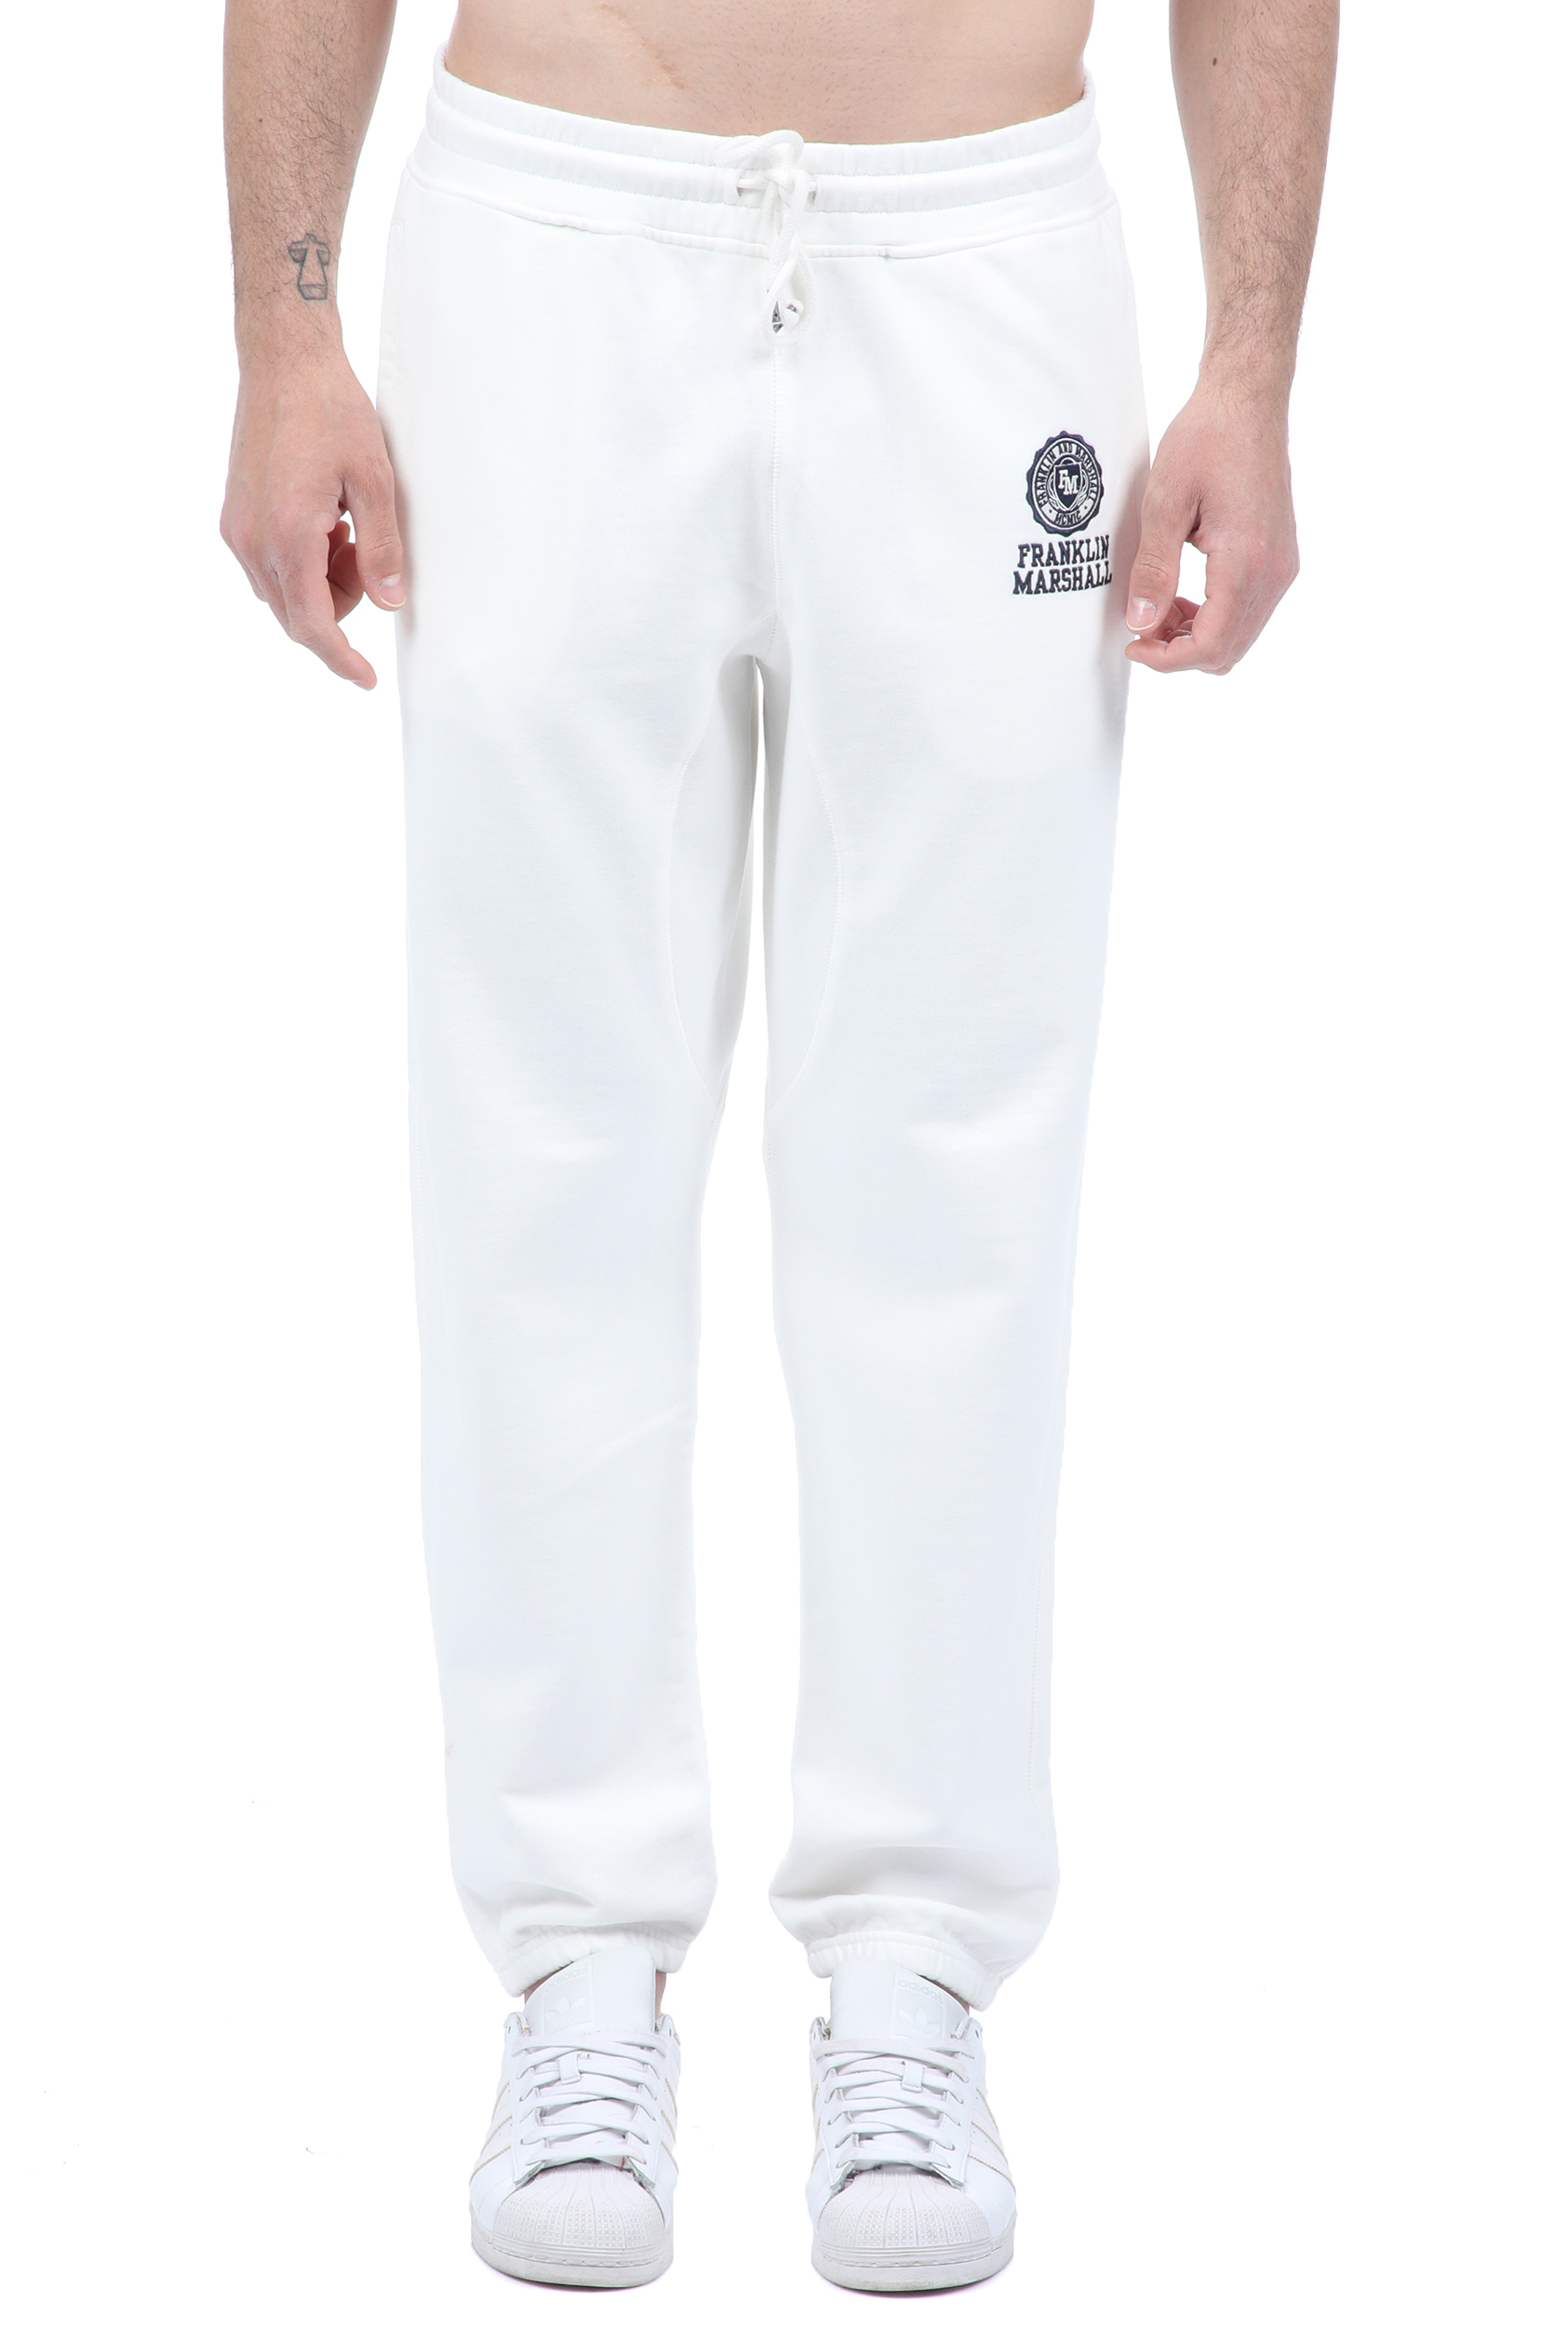 Ανδρικά/Ρούχα/Αθλητικά/Φόρμες FRANKLIN & MARSHALL - Ανδρικό παντελόνι φόρμας FRANKLIN & MARSHALL λευκό